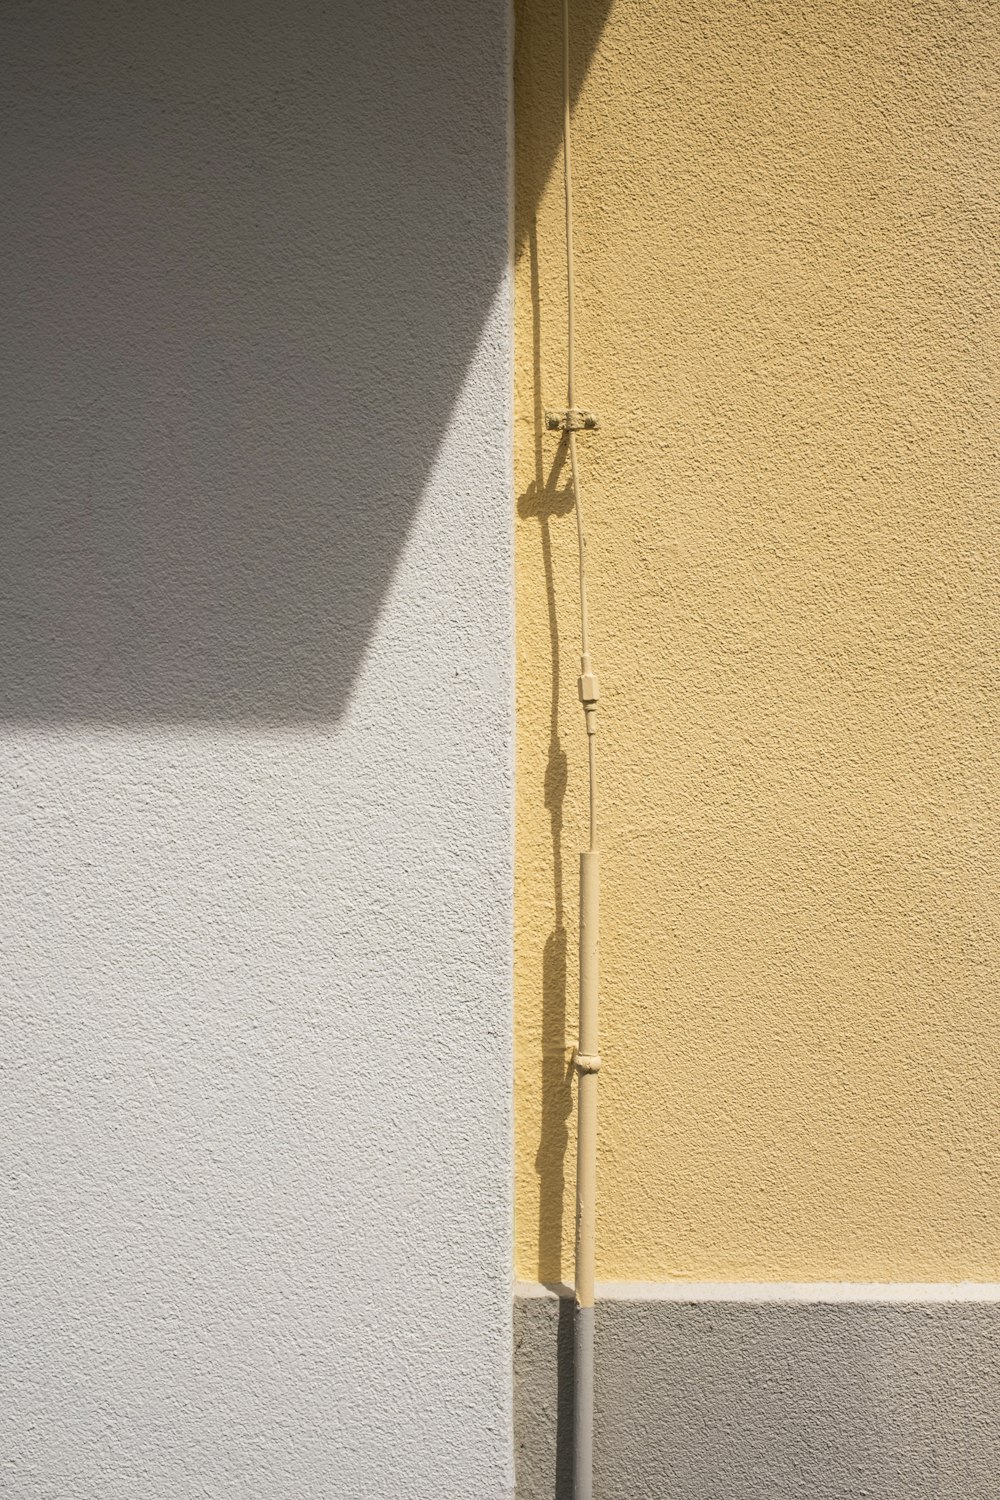 Puerta de madera amarilla con palanca de puerta plateada